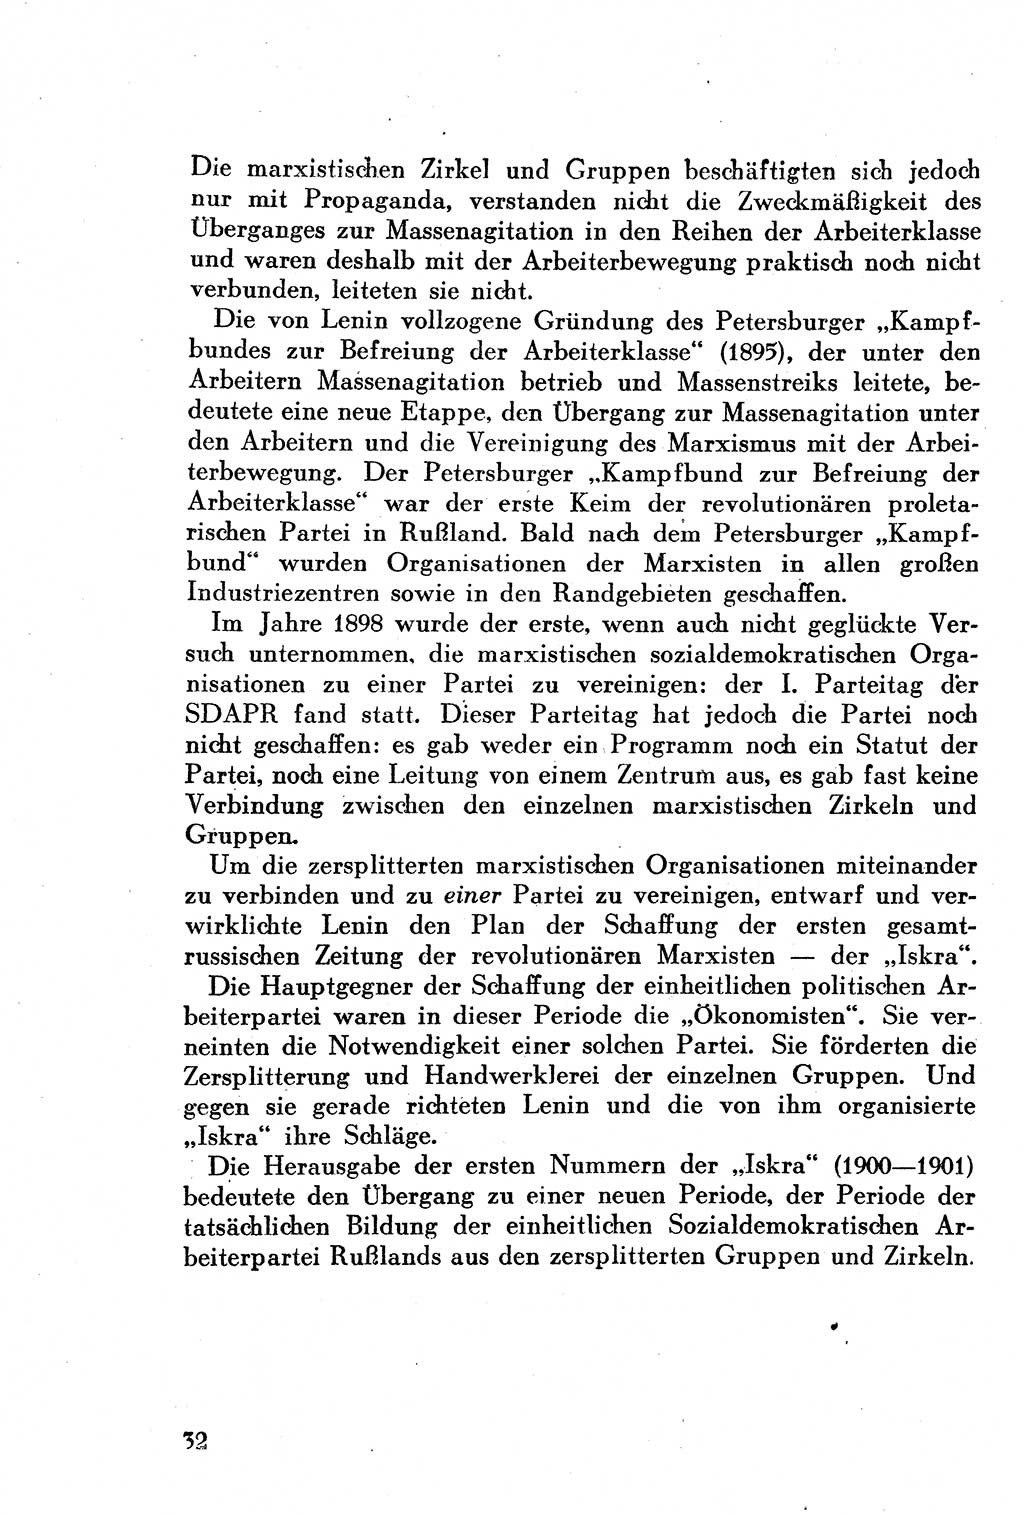 Geschichte der Kommunistischen Partei der Sowjetunion (KPdSU) [Sowjetische Besatzungszone (SBZ) Deutschlands] 1946, Seite 32 (Gesch. KPdSU SBZ Dtl. 1946, S. 32)